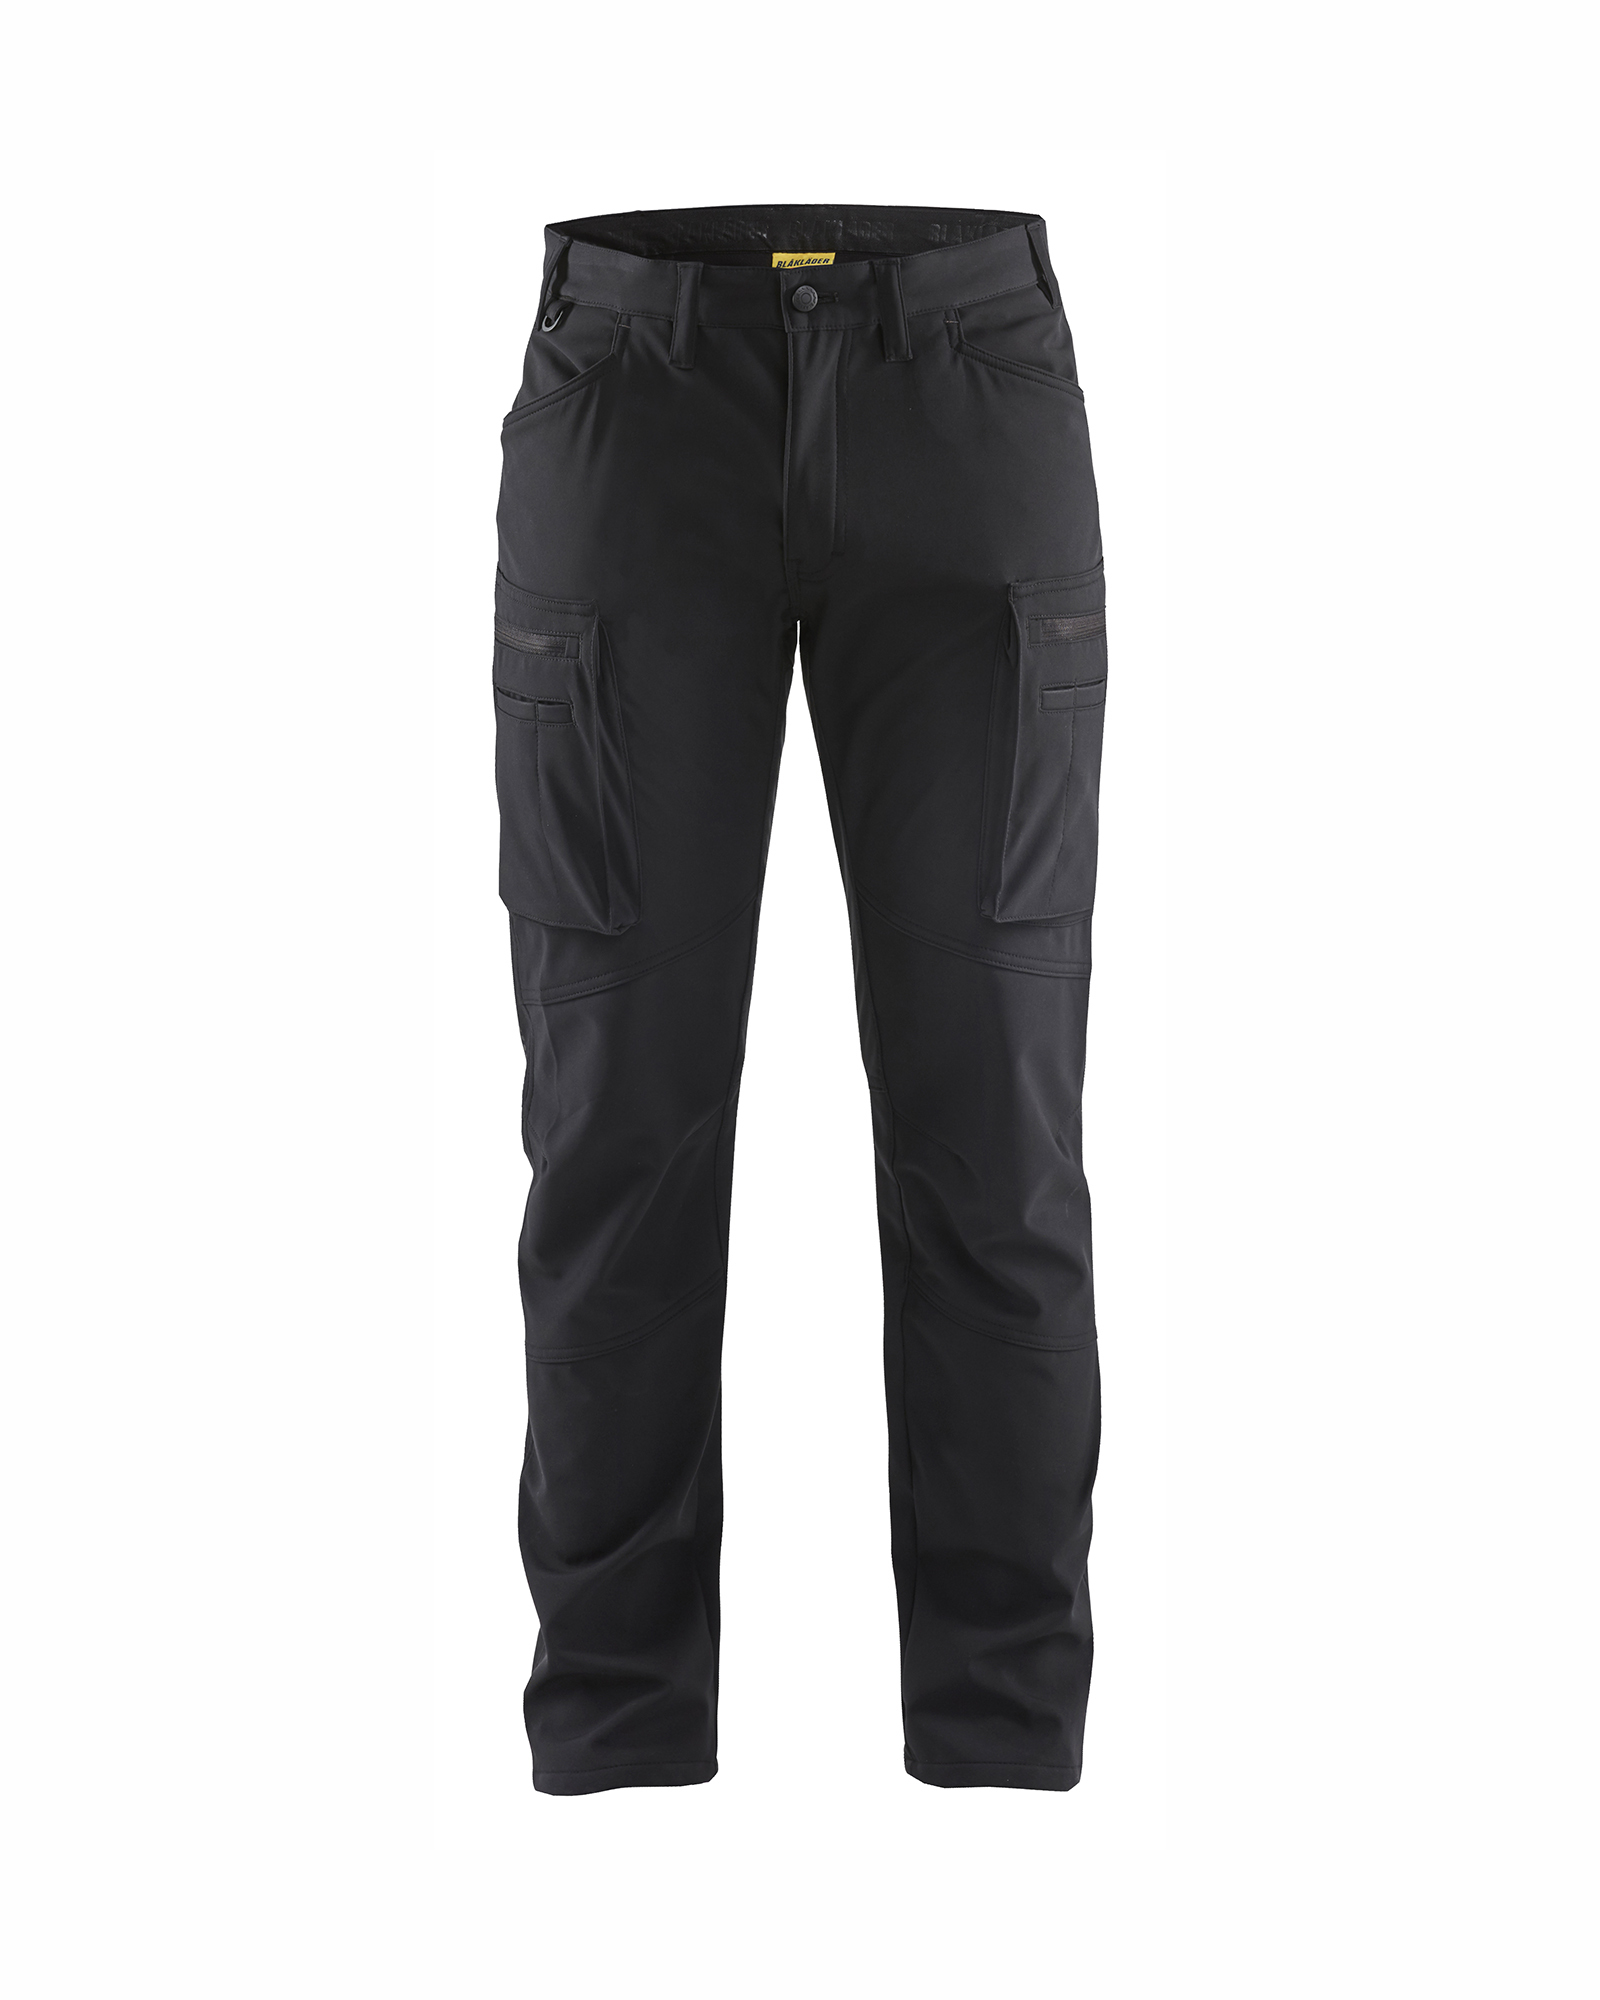 Pantalon maintenance softshell Blåkläder 1477 Noir Blaklader - 147725139900C